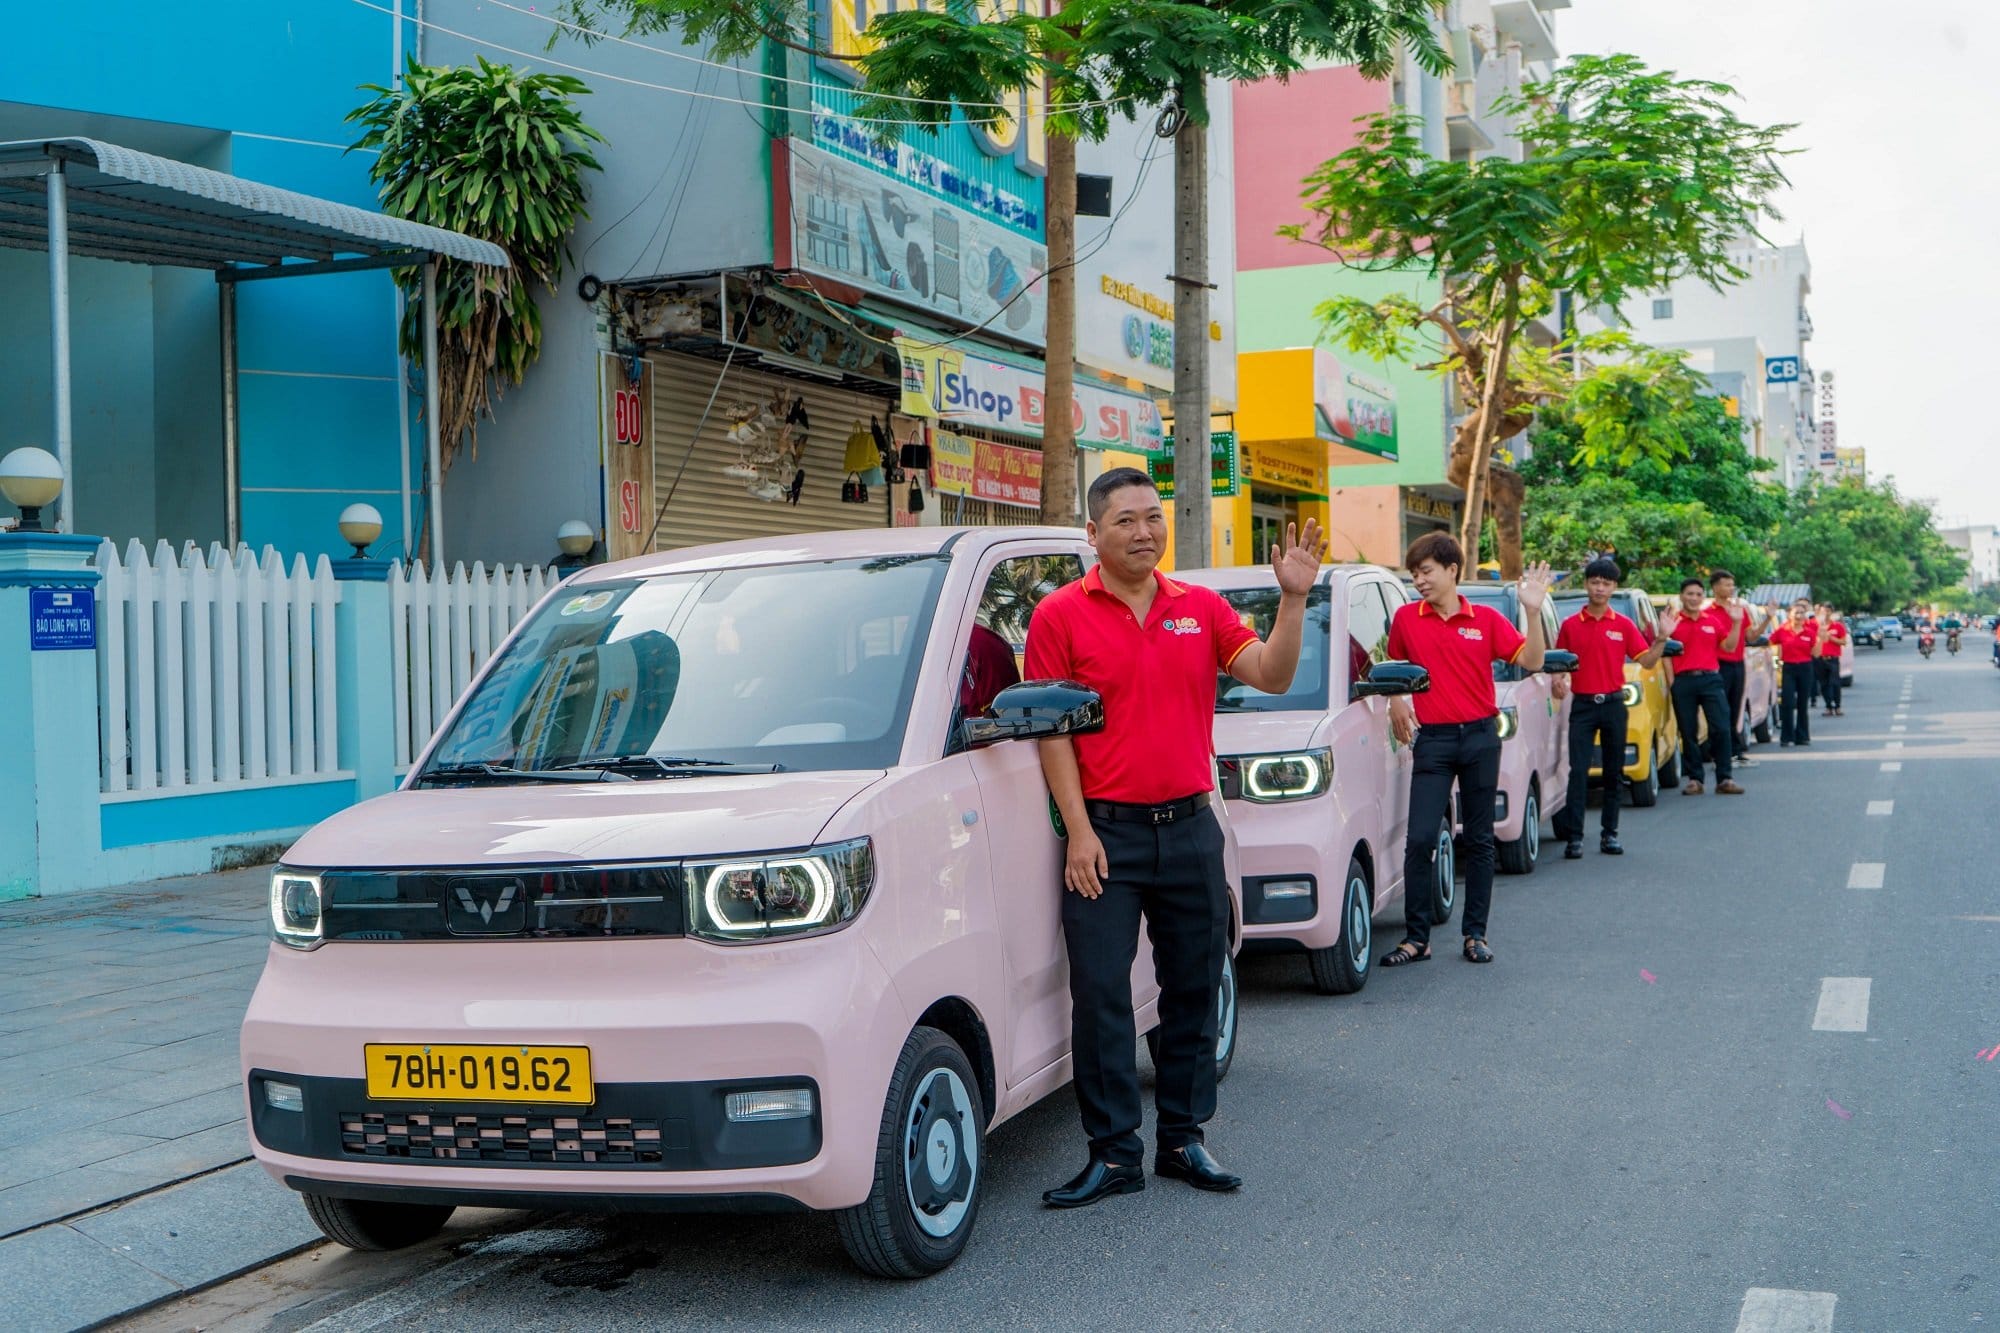 Taxi điện mini đầu tiên tại Việt Nam: Giá cước chỉ bằng 1 nửa Xanh SM của tỷ phú Phạm Nhật Vượng nhưng cộng đồng mạng vẫn lo ngại vì 2 yếu tố này- Ảnh 1.